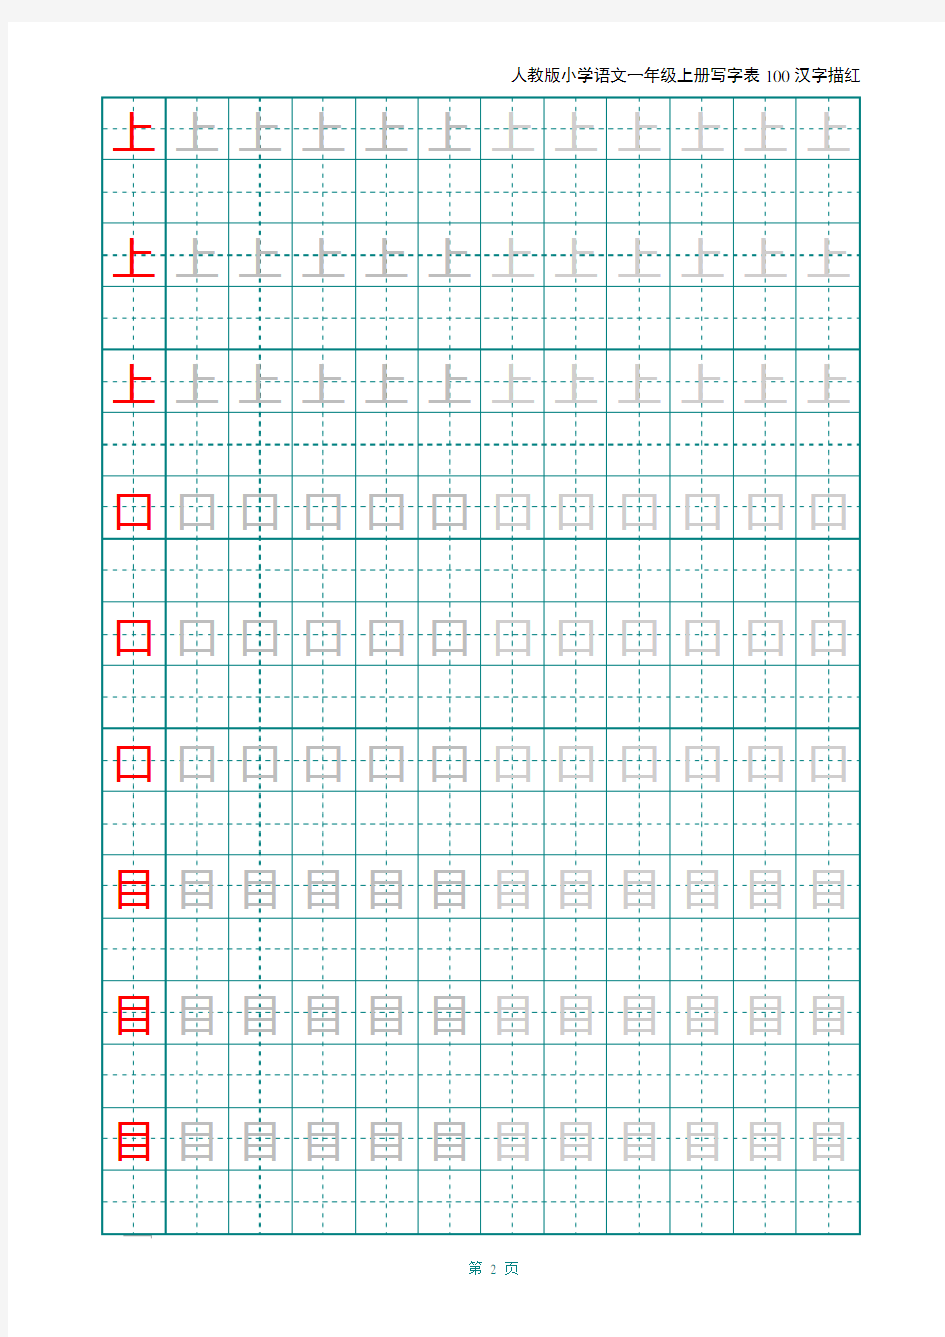 【推荐】2020年人教版小学语文一年级上册写字表100汉字字帖——打印版